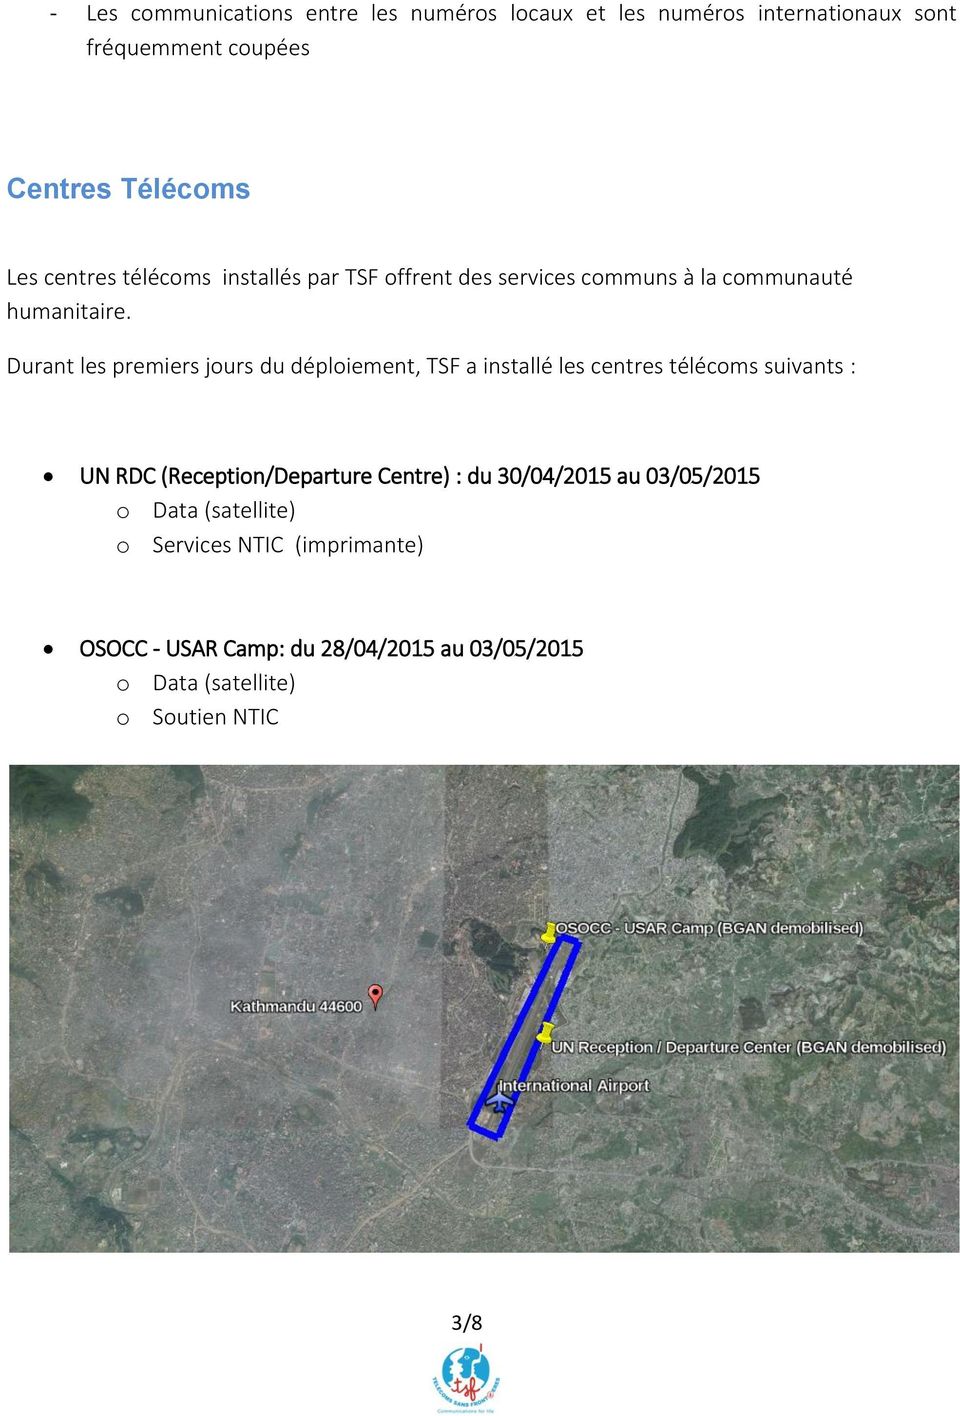 Durant les premiers jours du déploiement, TSF a installé les centres télécoms suivants : UN RDC (Reception/Departure Centre)